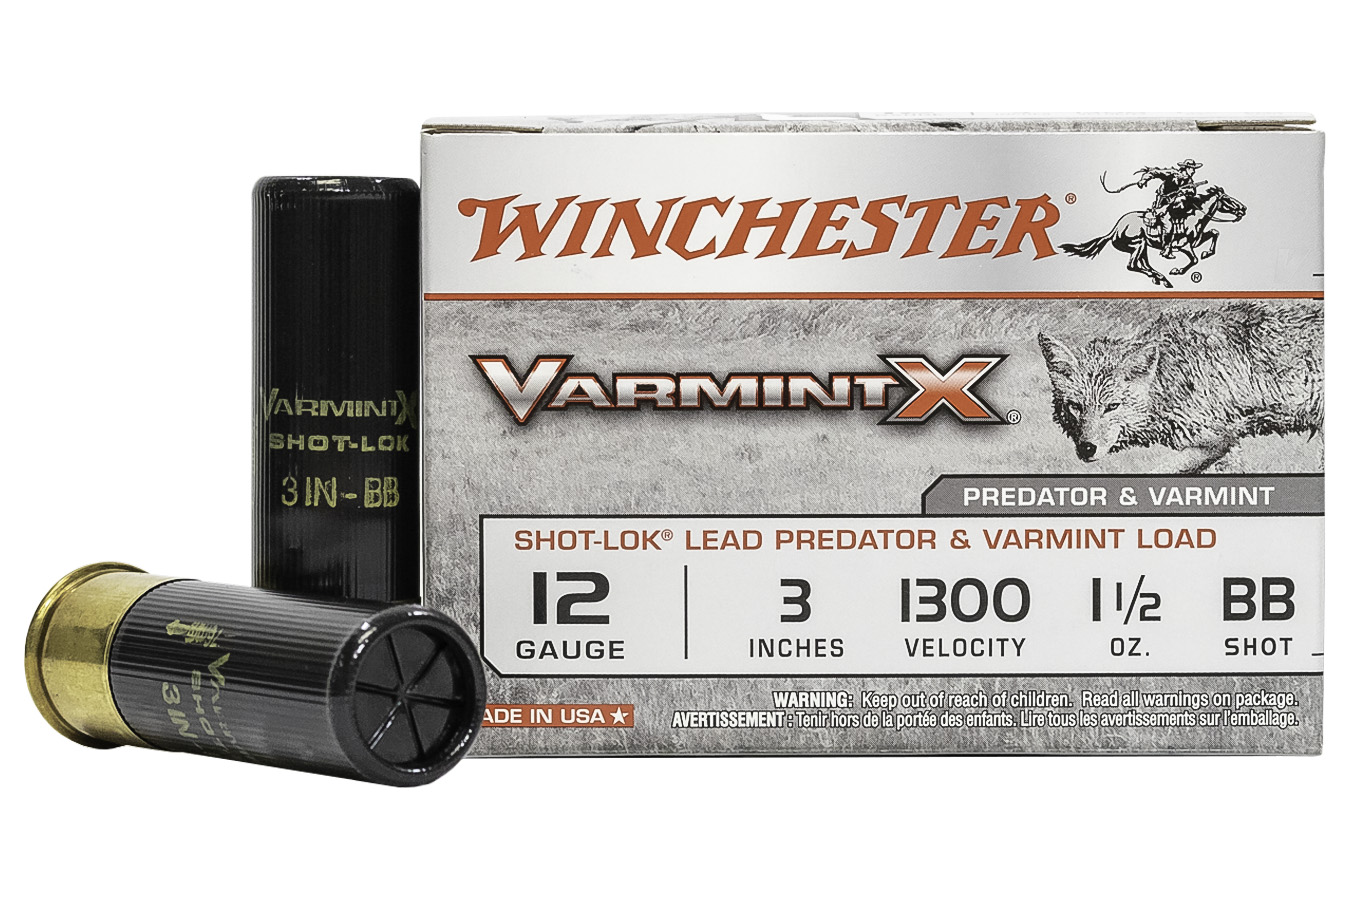 WINCHESTER AMMO 12 GA 3 IN 1-1/2 OZ BB SHOT VARMINT X SHOTSHELL